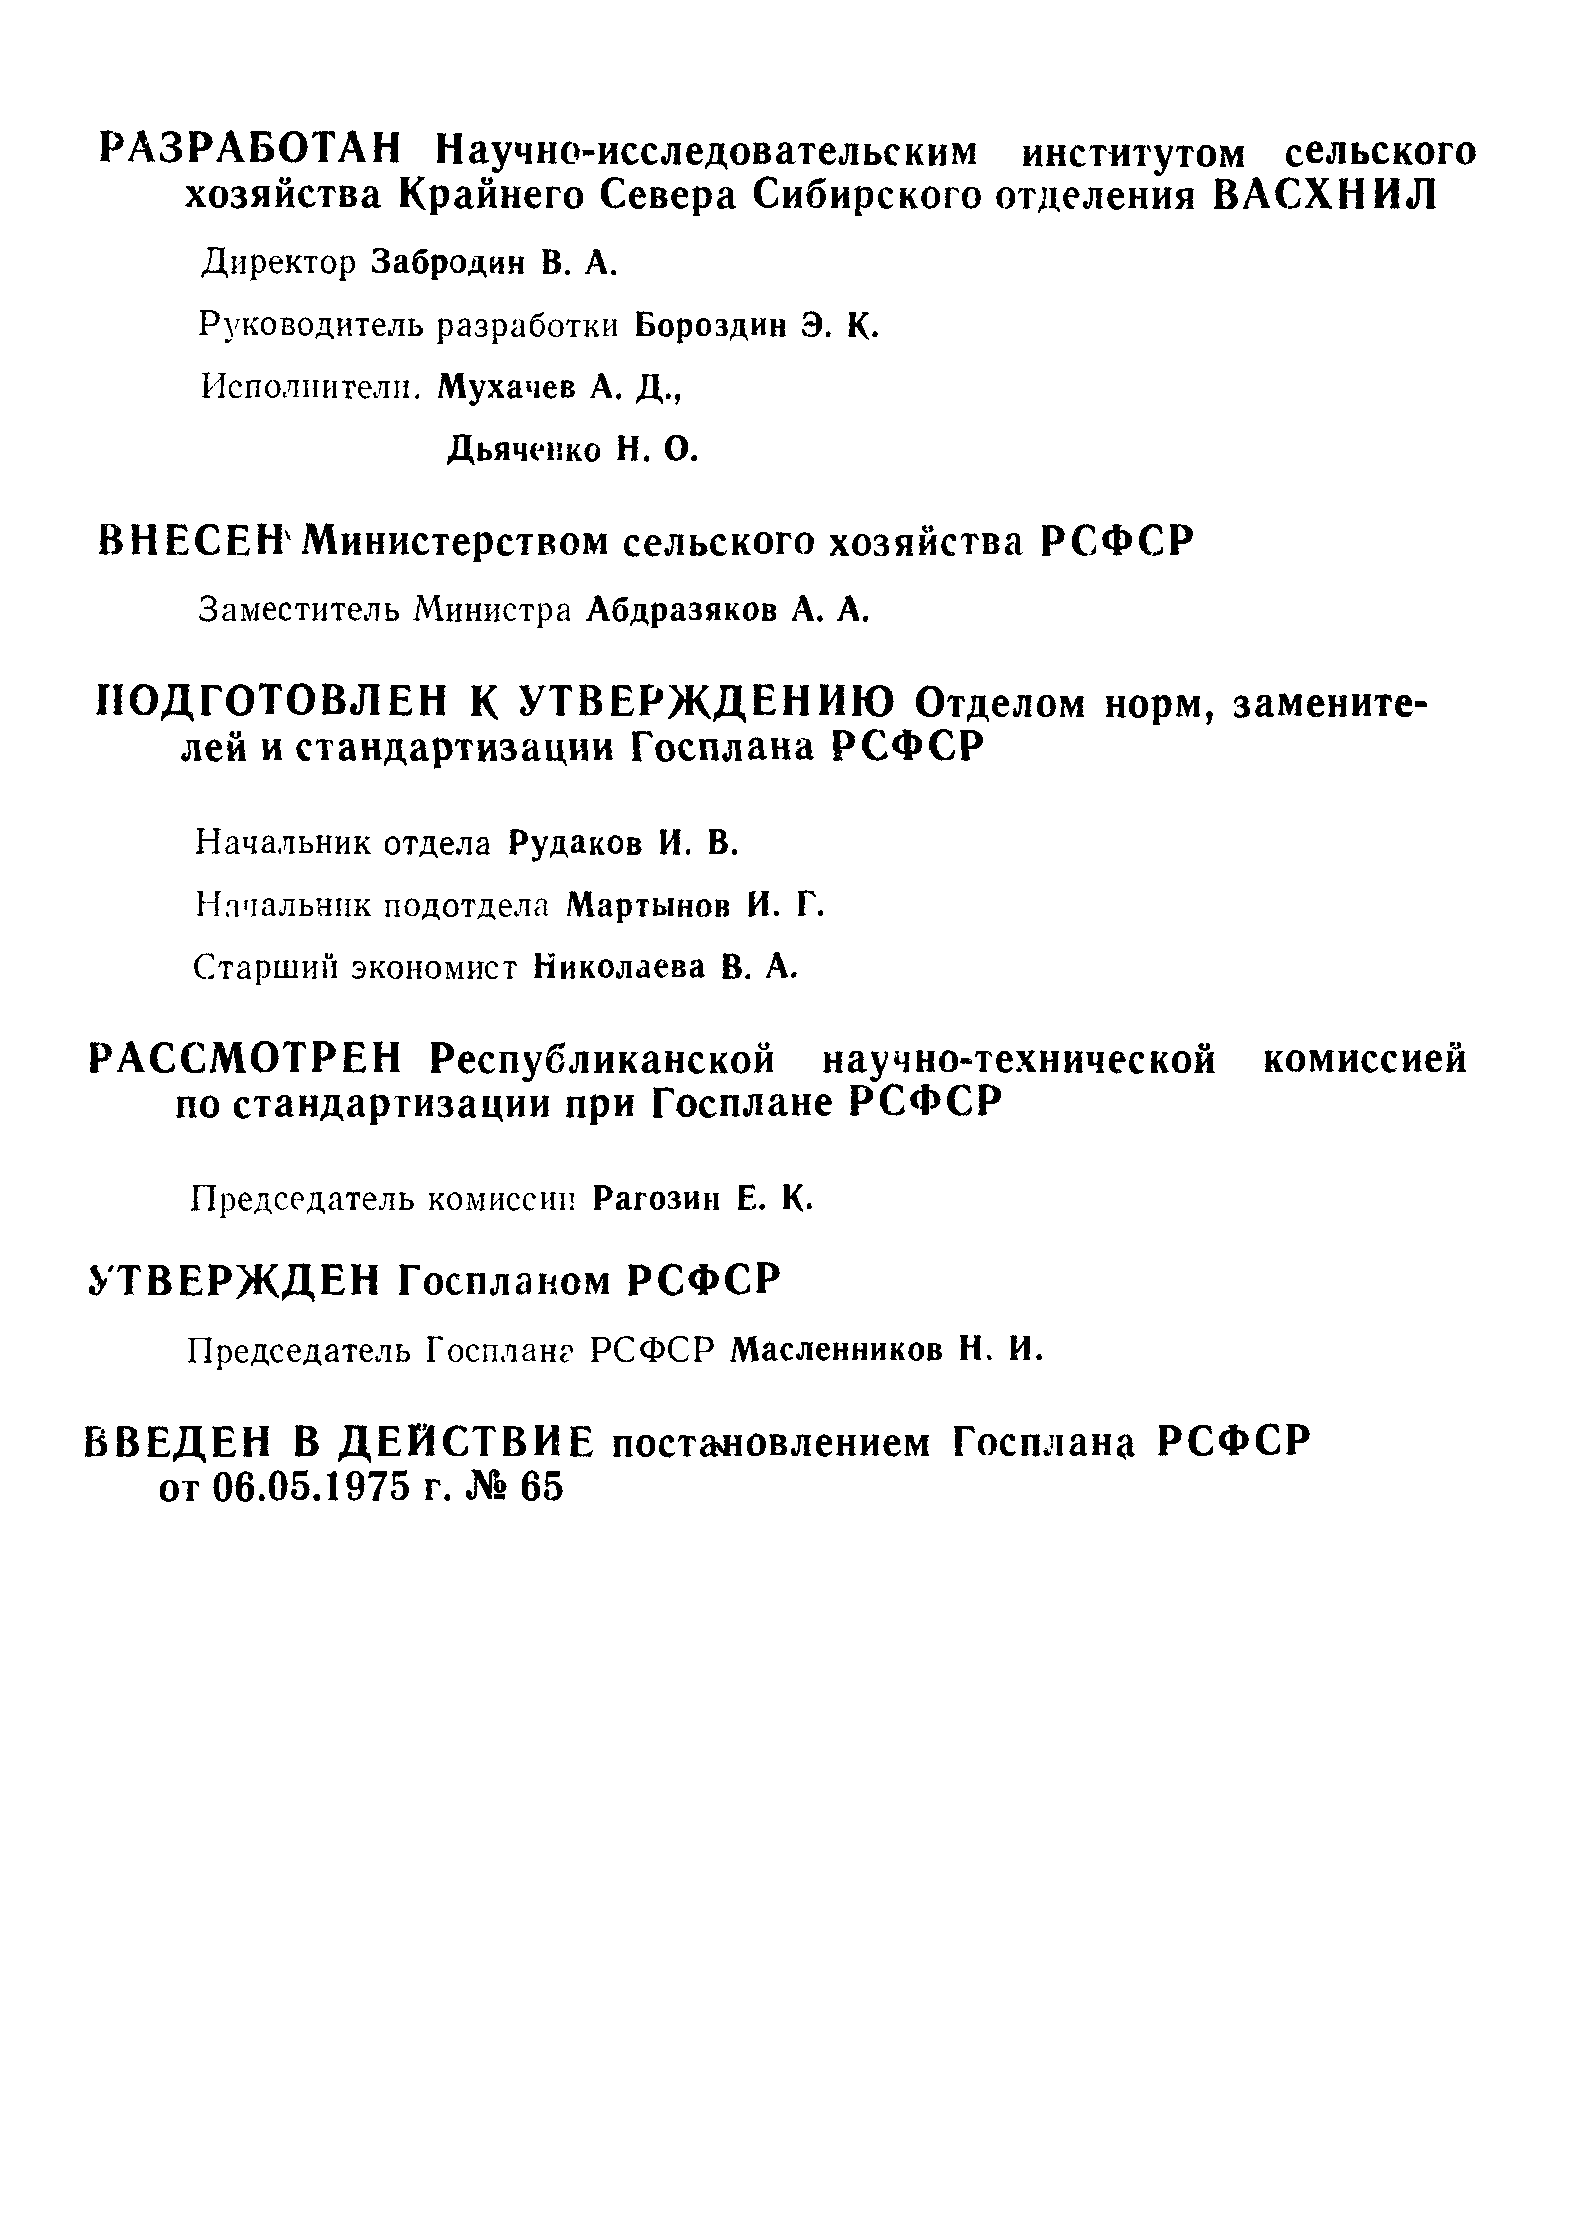 РСТ РСФСР 511-75